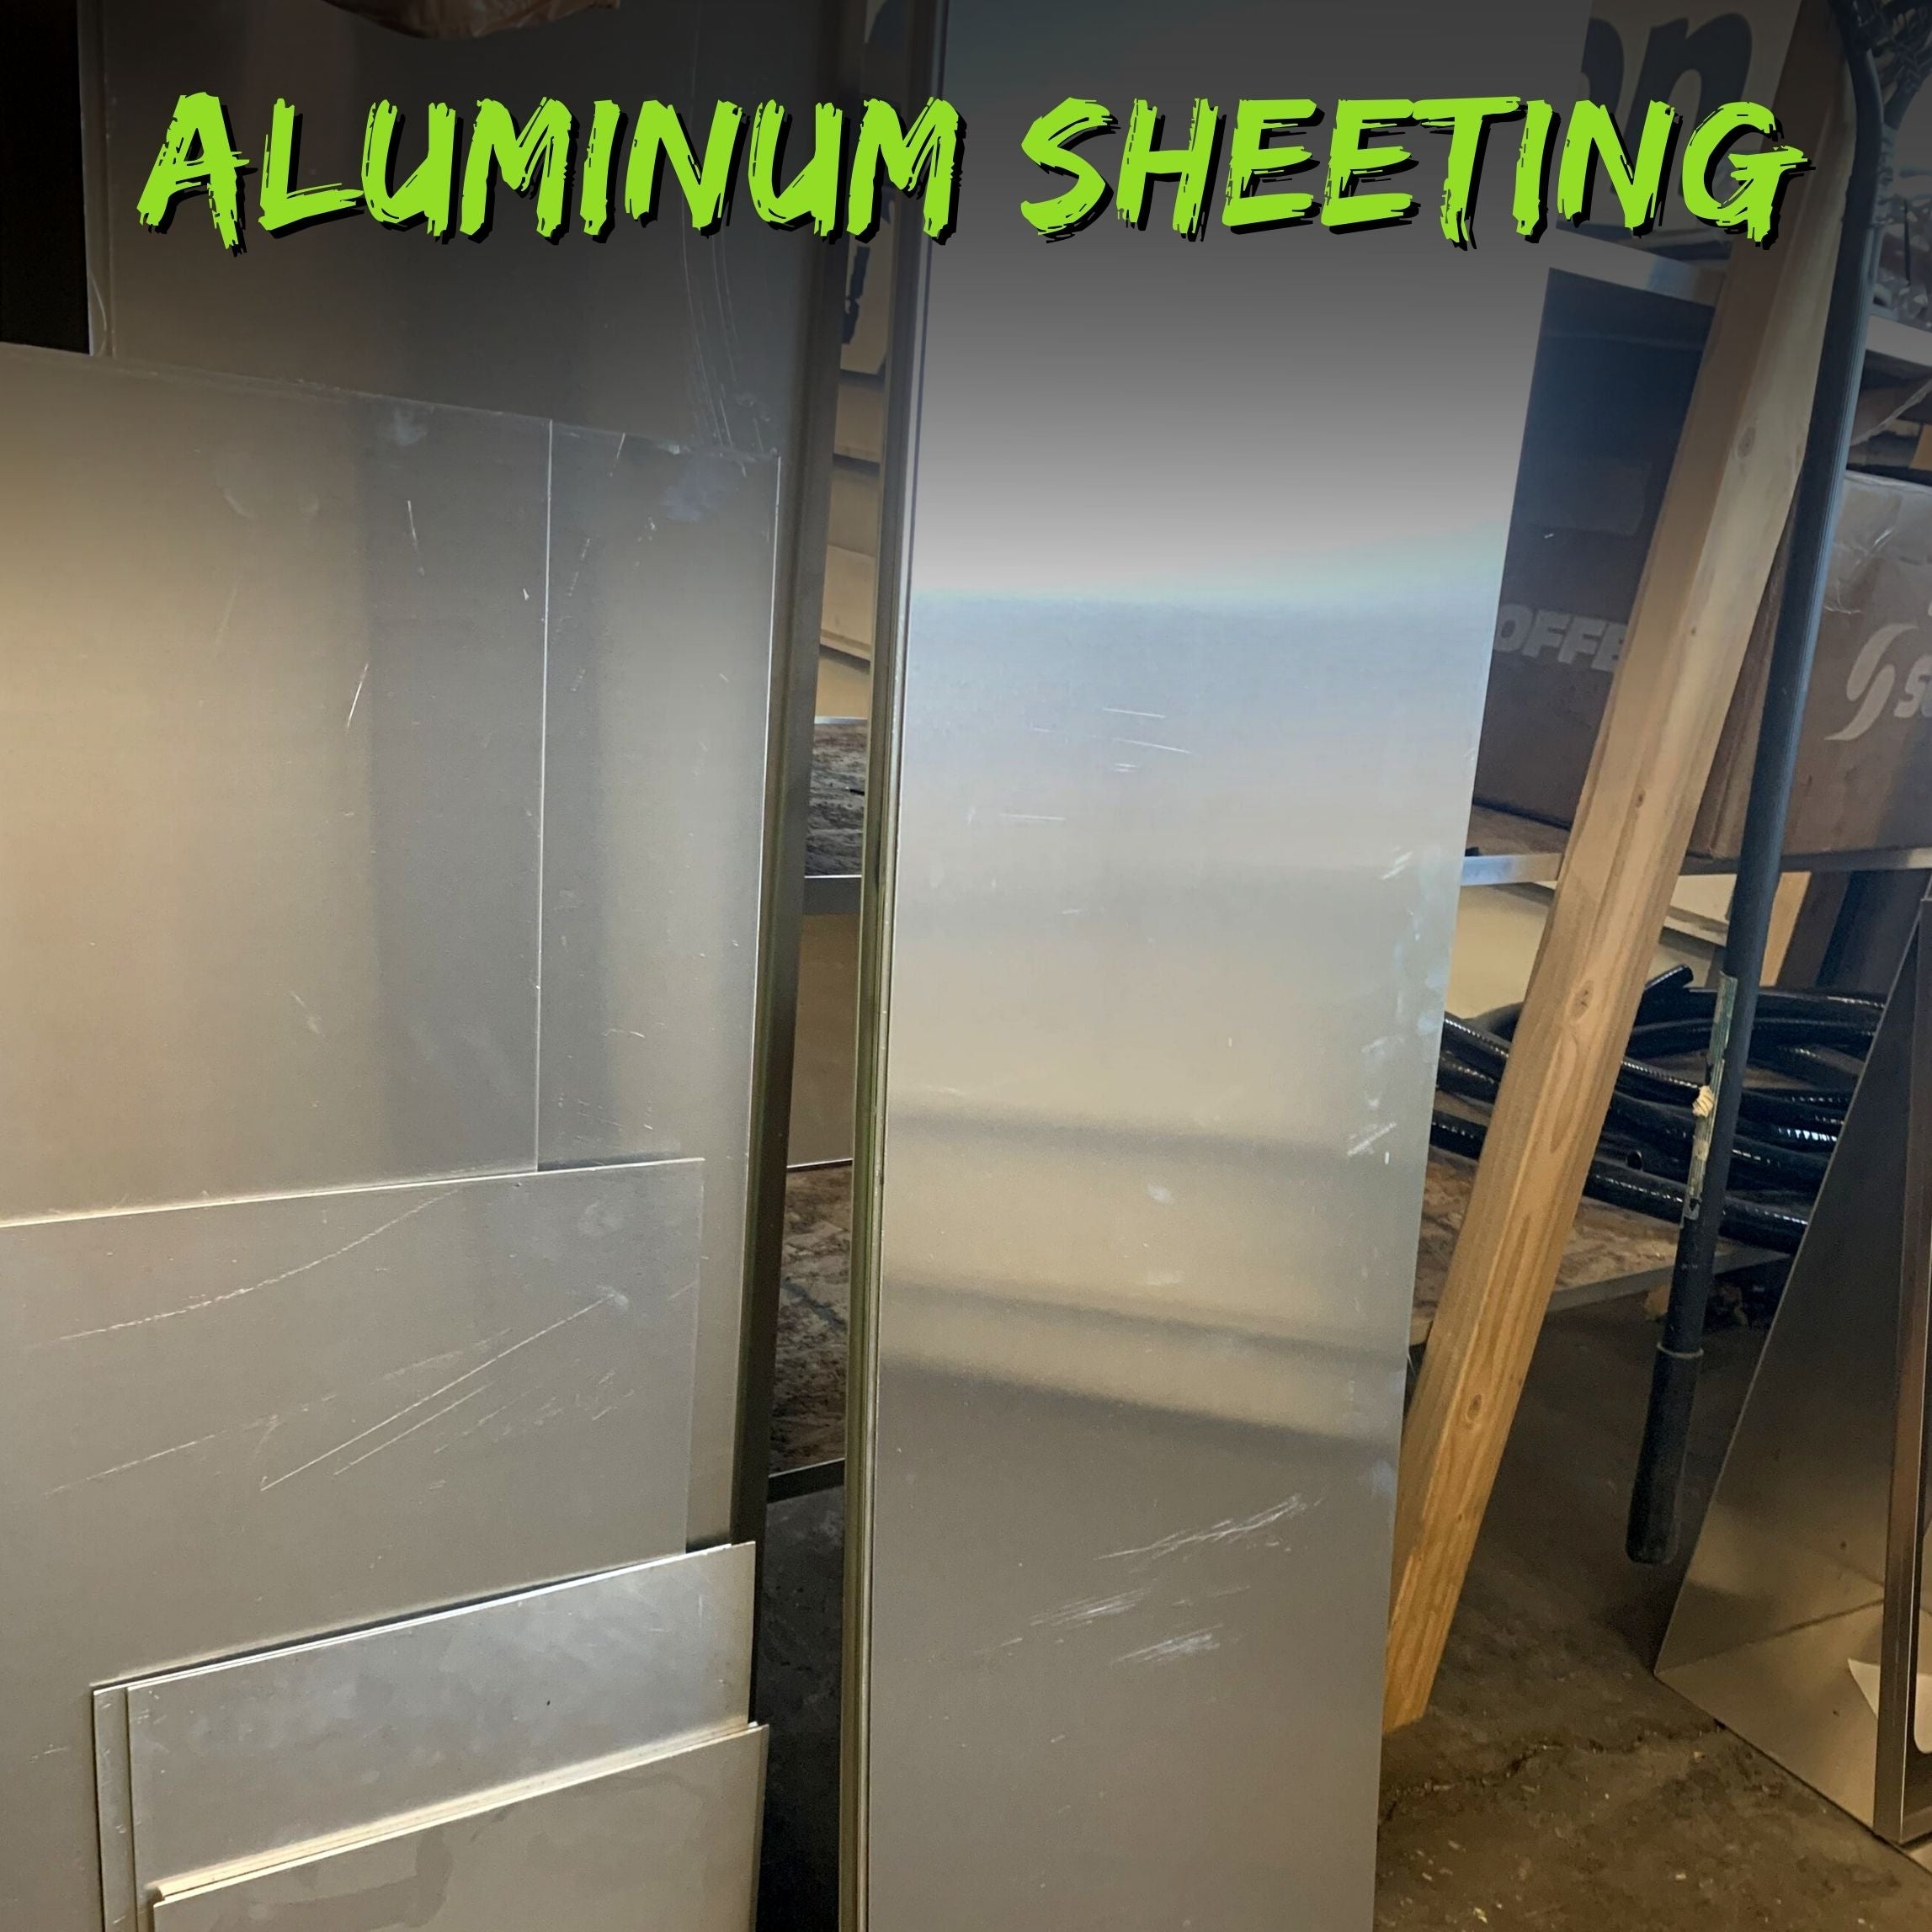 Aluminum Sheeting